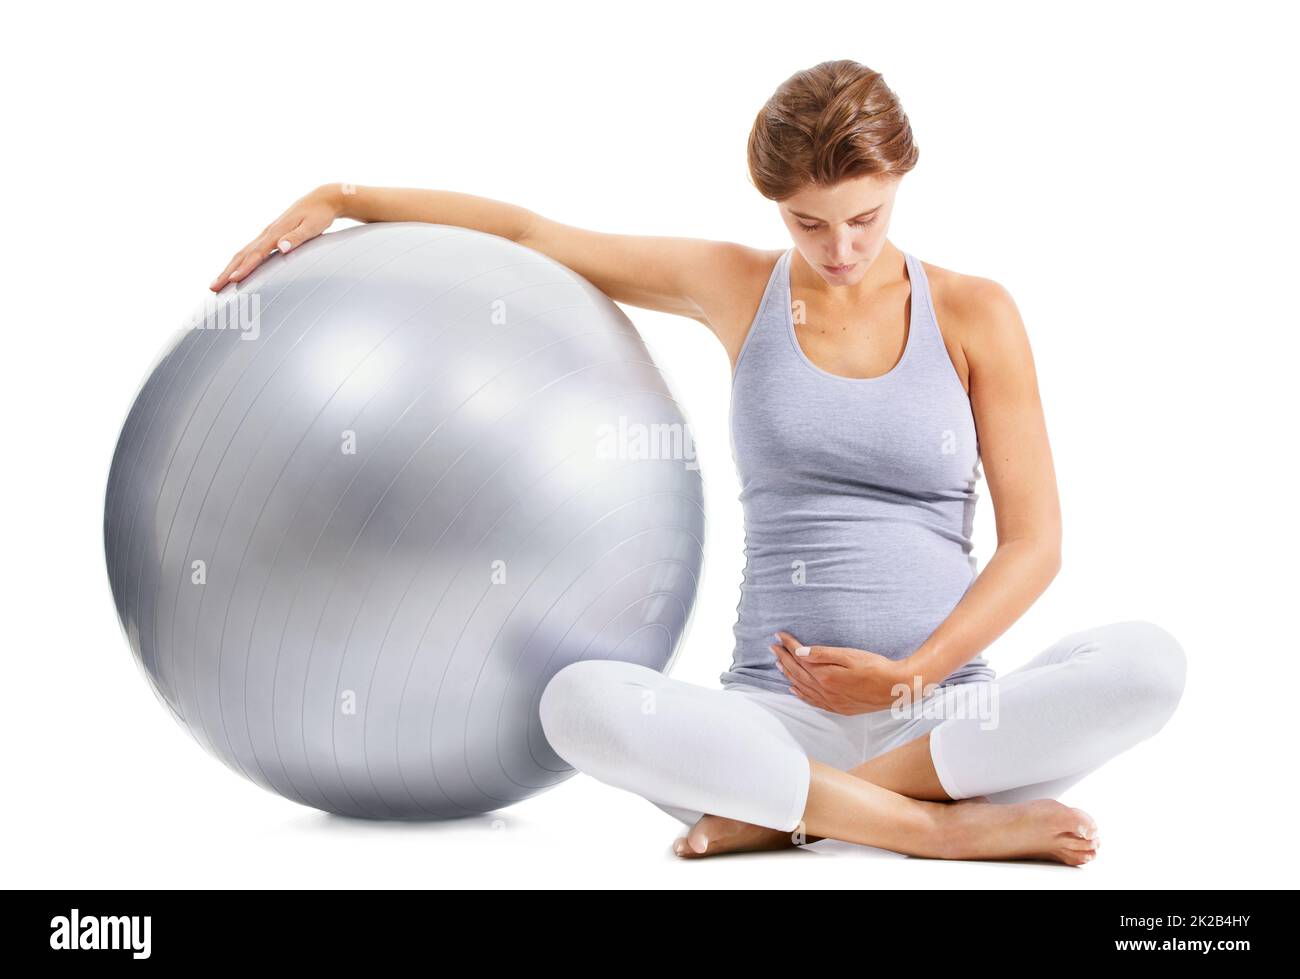 Kümmert sich um ihr Baby vor seiner Geburt. Eine fick-Schwangere blickt auf ihren Bauch, während sie einen Übungsball hält. Stockfoto